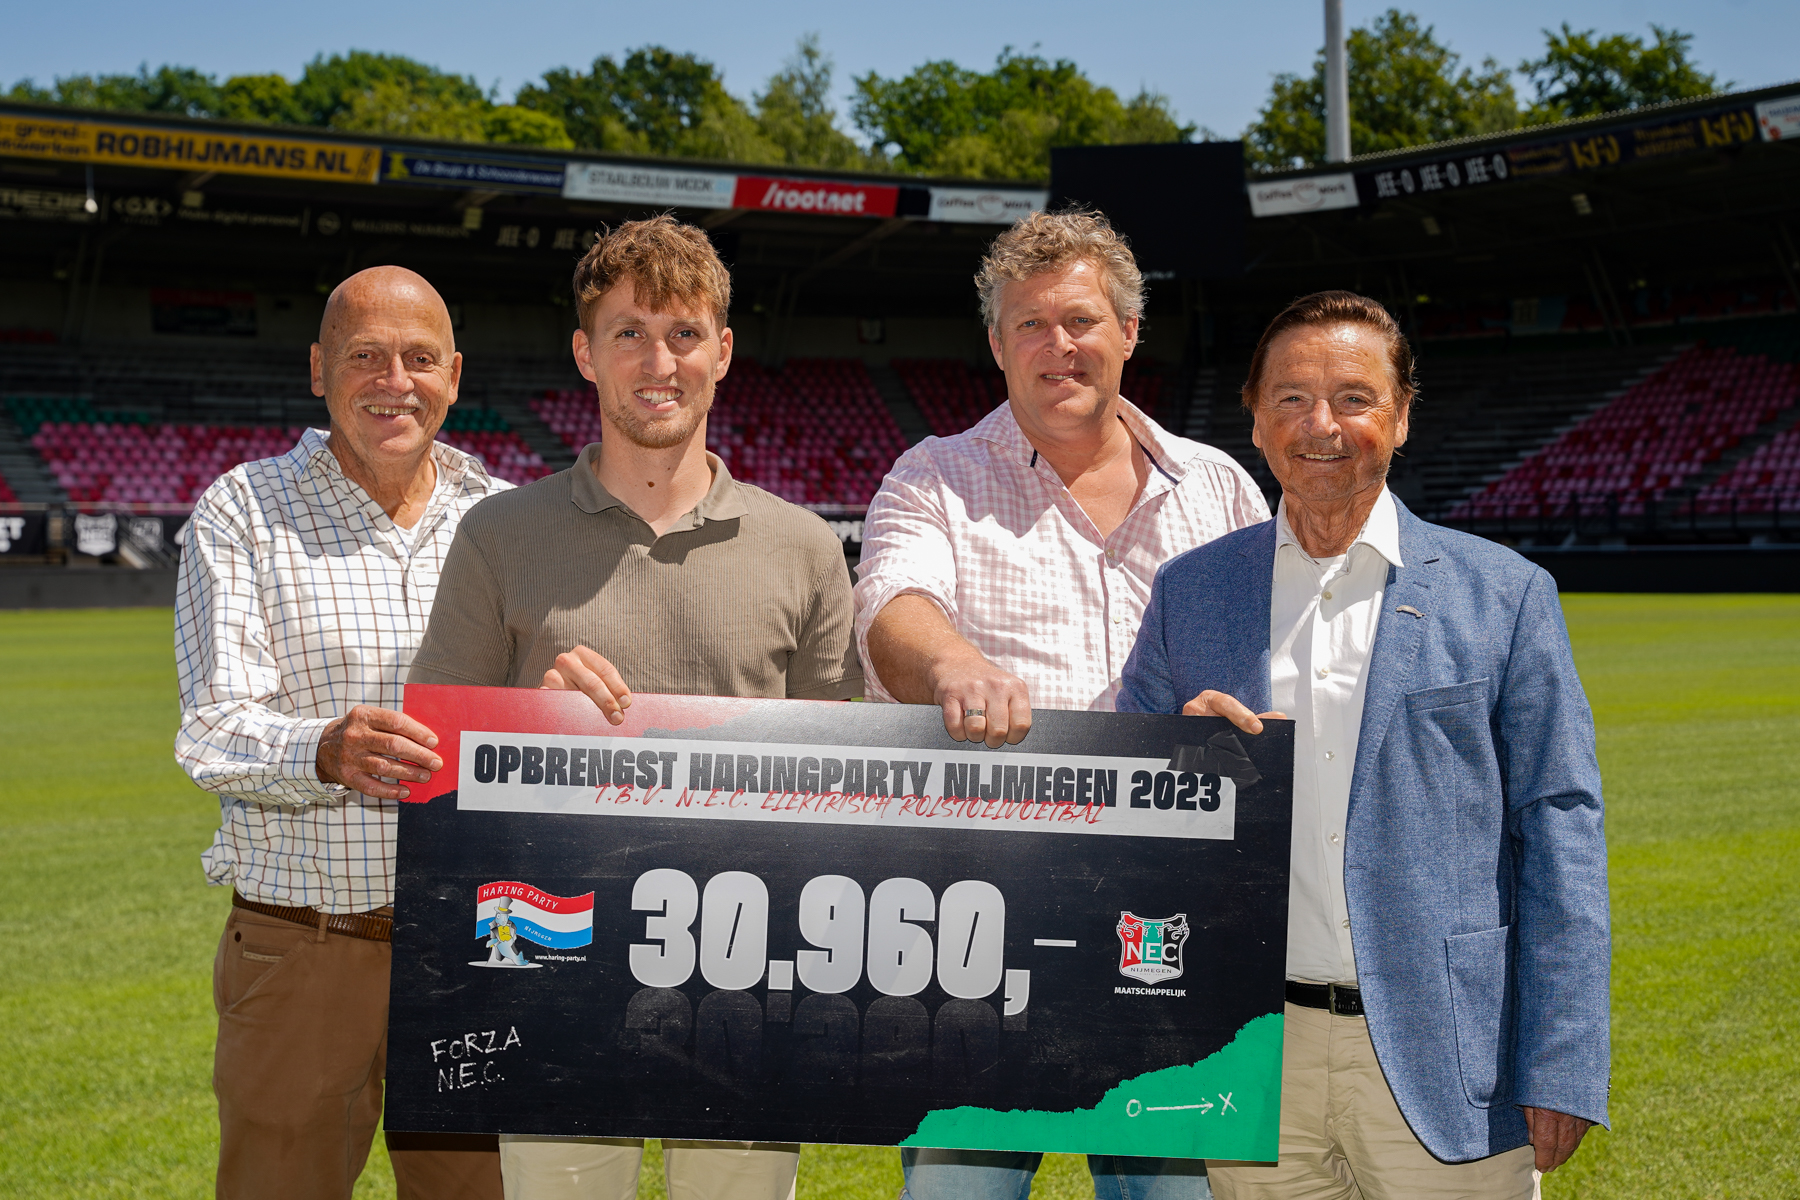   Nijmeegse HaringParty 2023 brengt ruim € 30.000,- op voor N.E.C. Maatschappelijk!